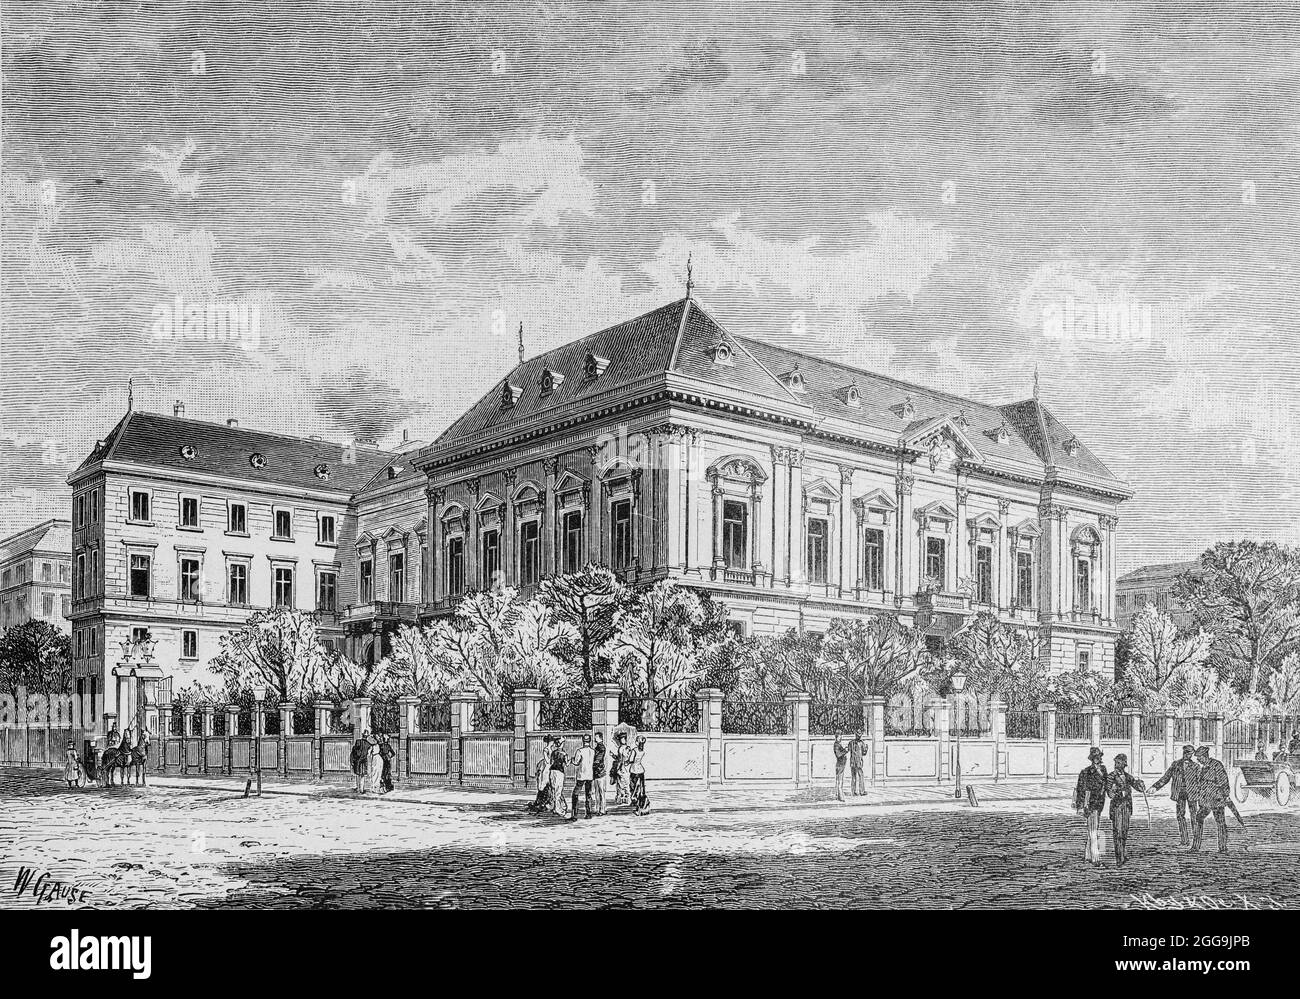 Palazzo dell'Ambasciatore Imperiale Tedesco a Vienna, Austria, Europa, Hauptstädte der Welt, illustrazione storica 1897 Foto Stock